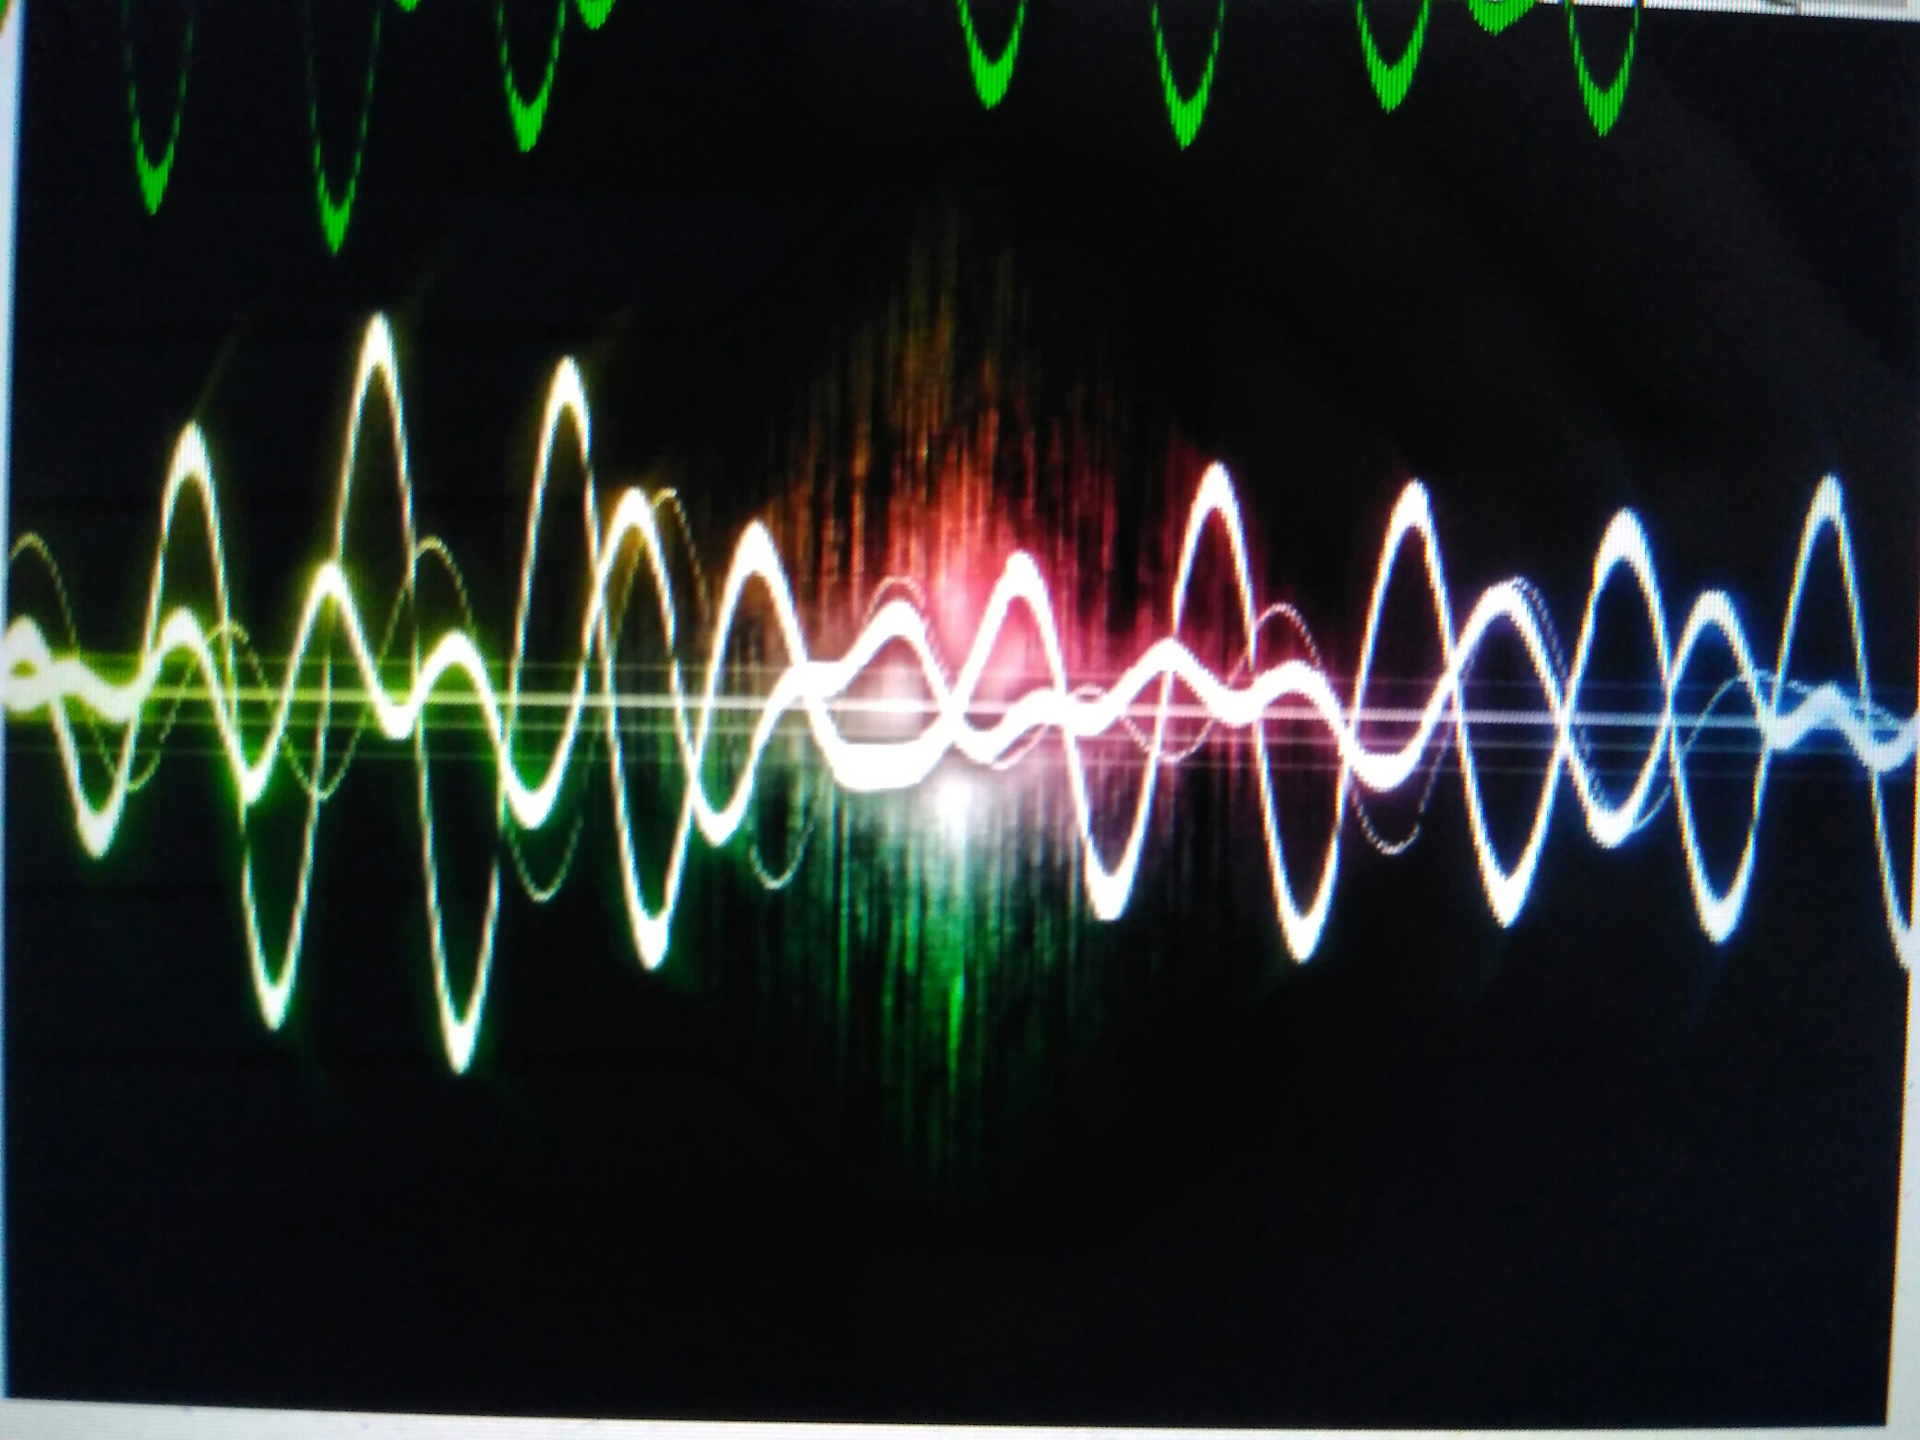 Sound interesting. Звуковая волна. Волны звука. Изображение звука. Музыкальные вибрации.